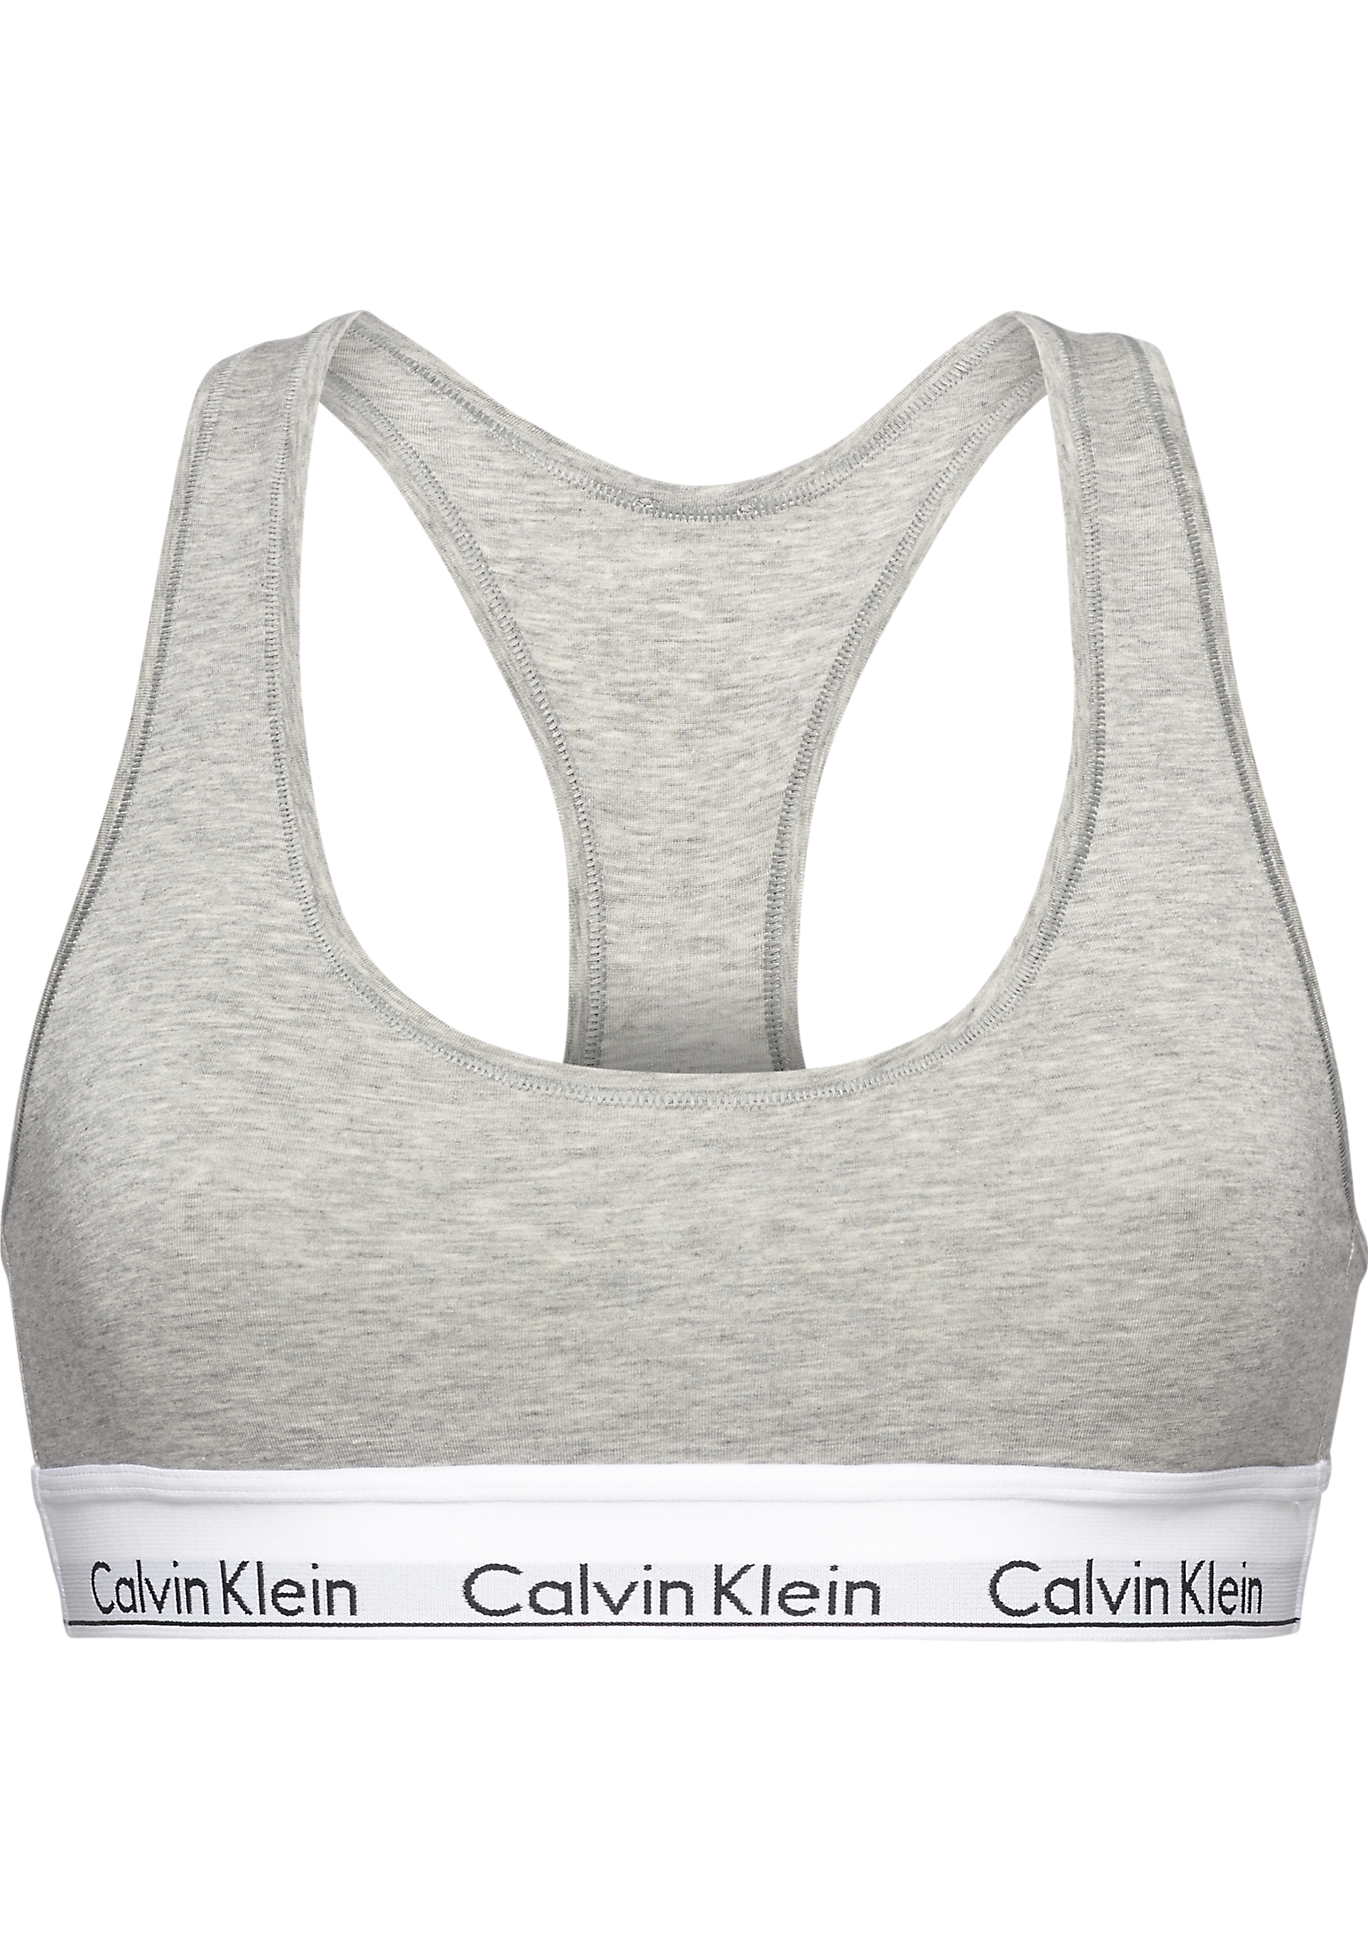 Calvin dames Modern Cotton bralette top, ongevoerd, grijs - tot 50% korting - Gratis verzending en retour